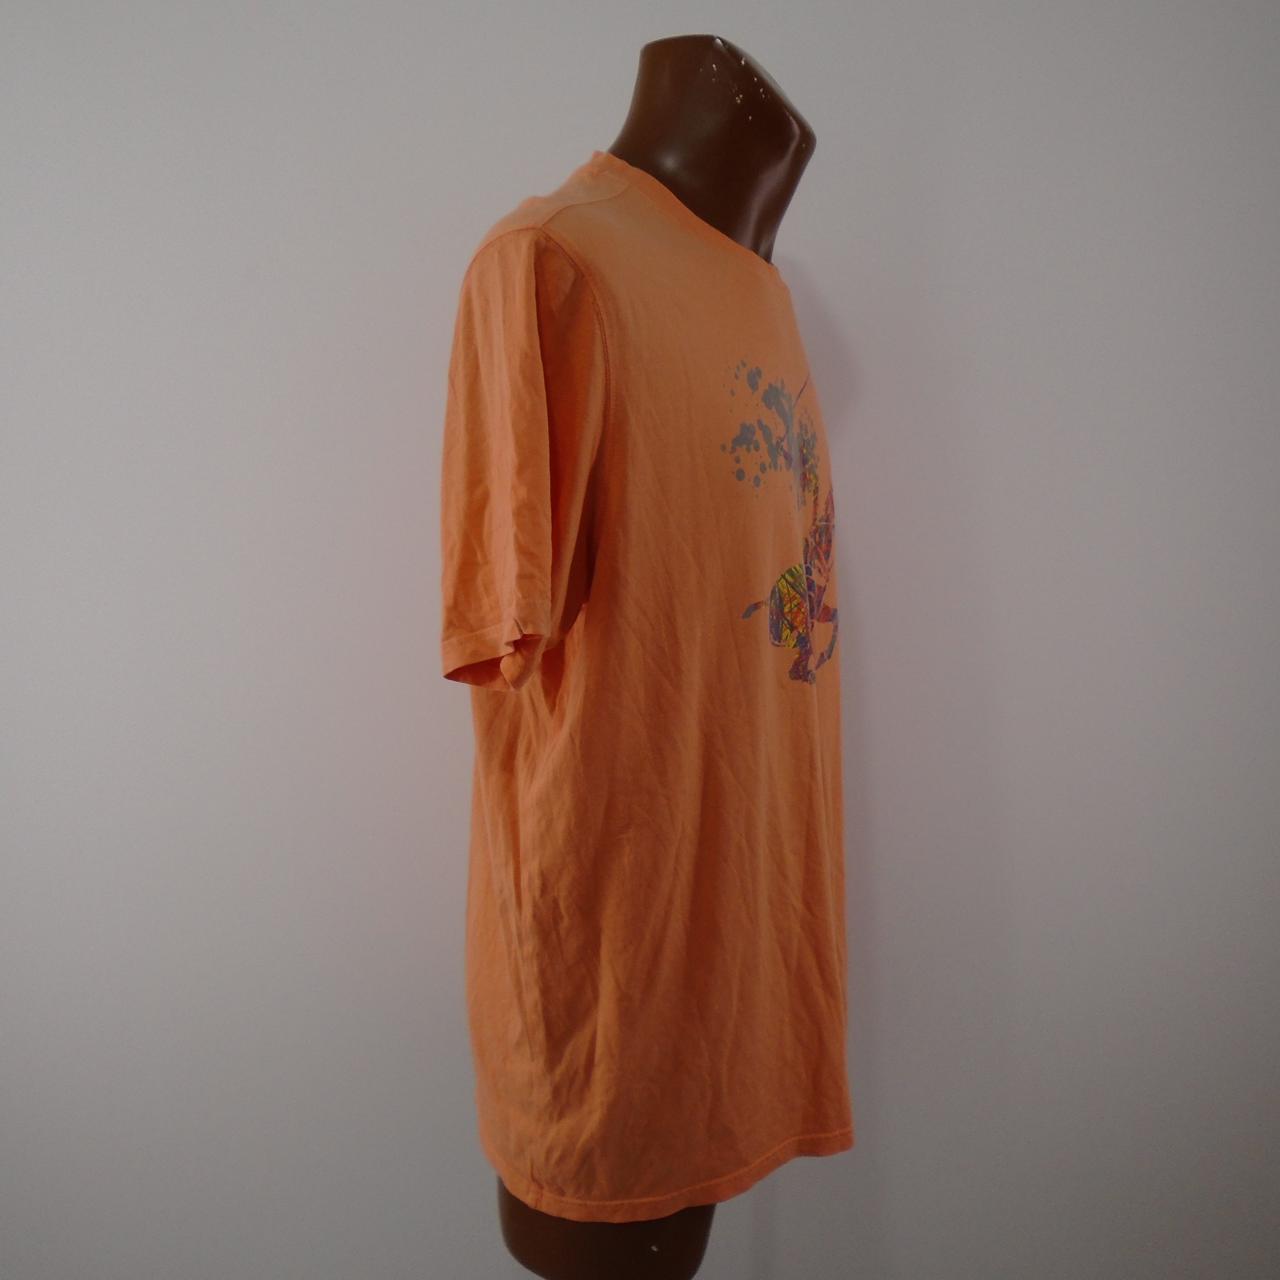 Camiseta de polo para hombre del club. Naranja. XL. Usado. Bien